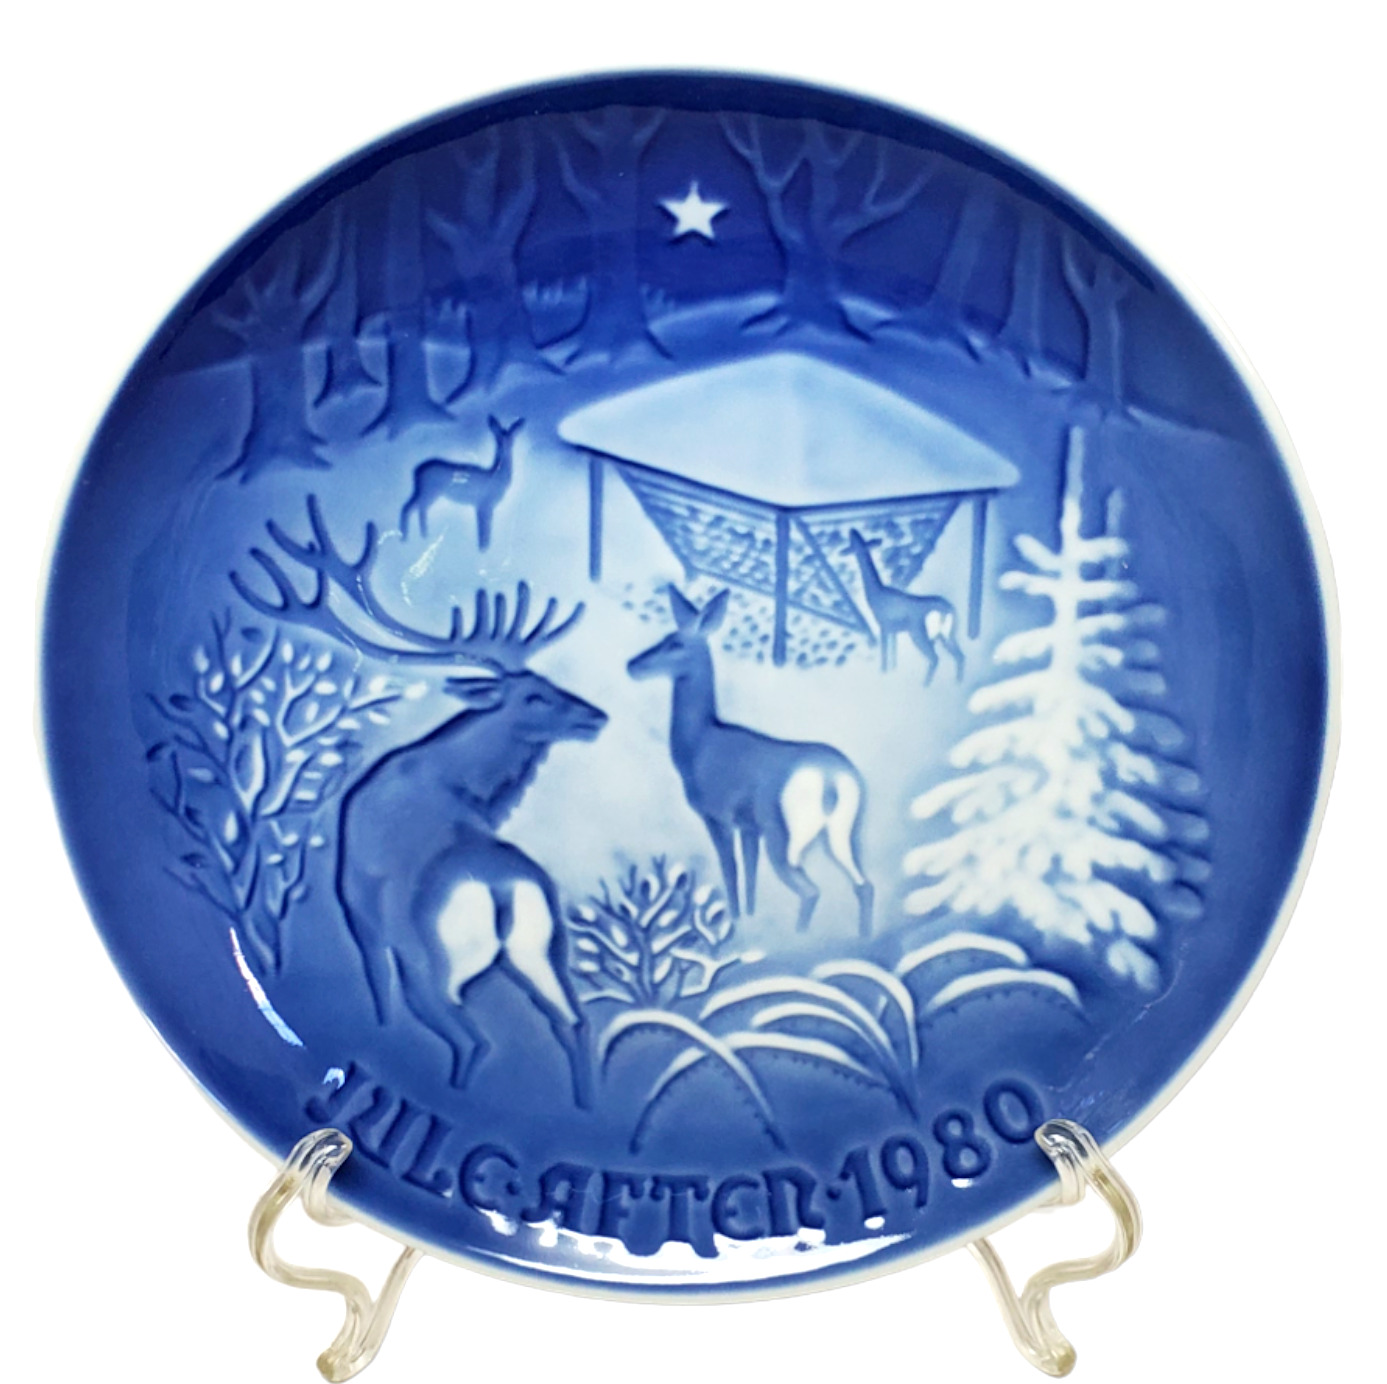 B&G Bing & Grondahl - Christmas Plate 1980 - Christmas in the Woods - Denmark